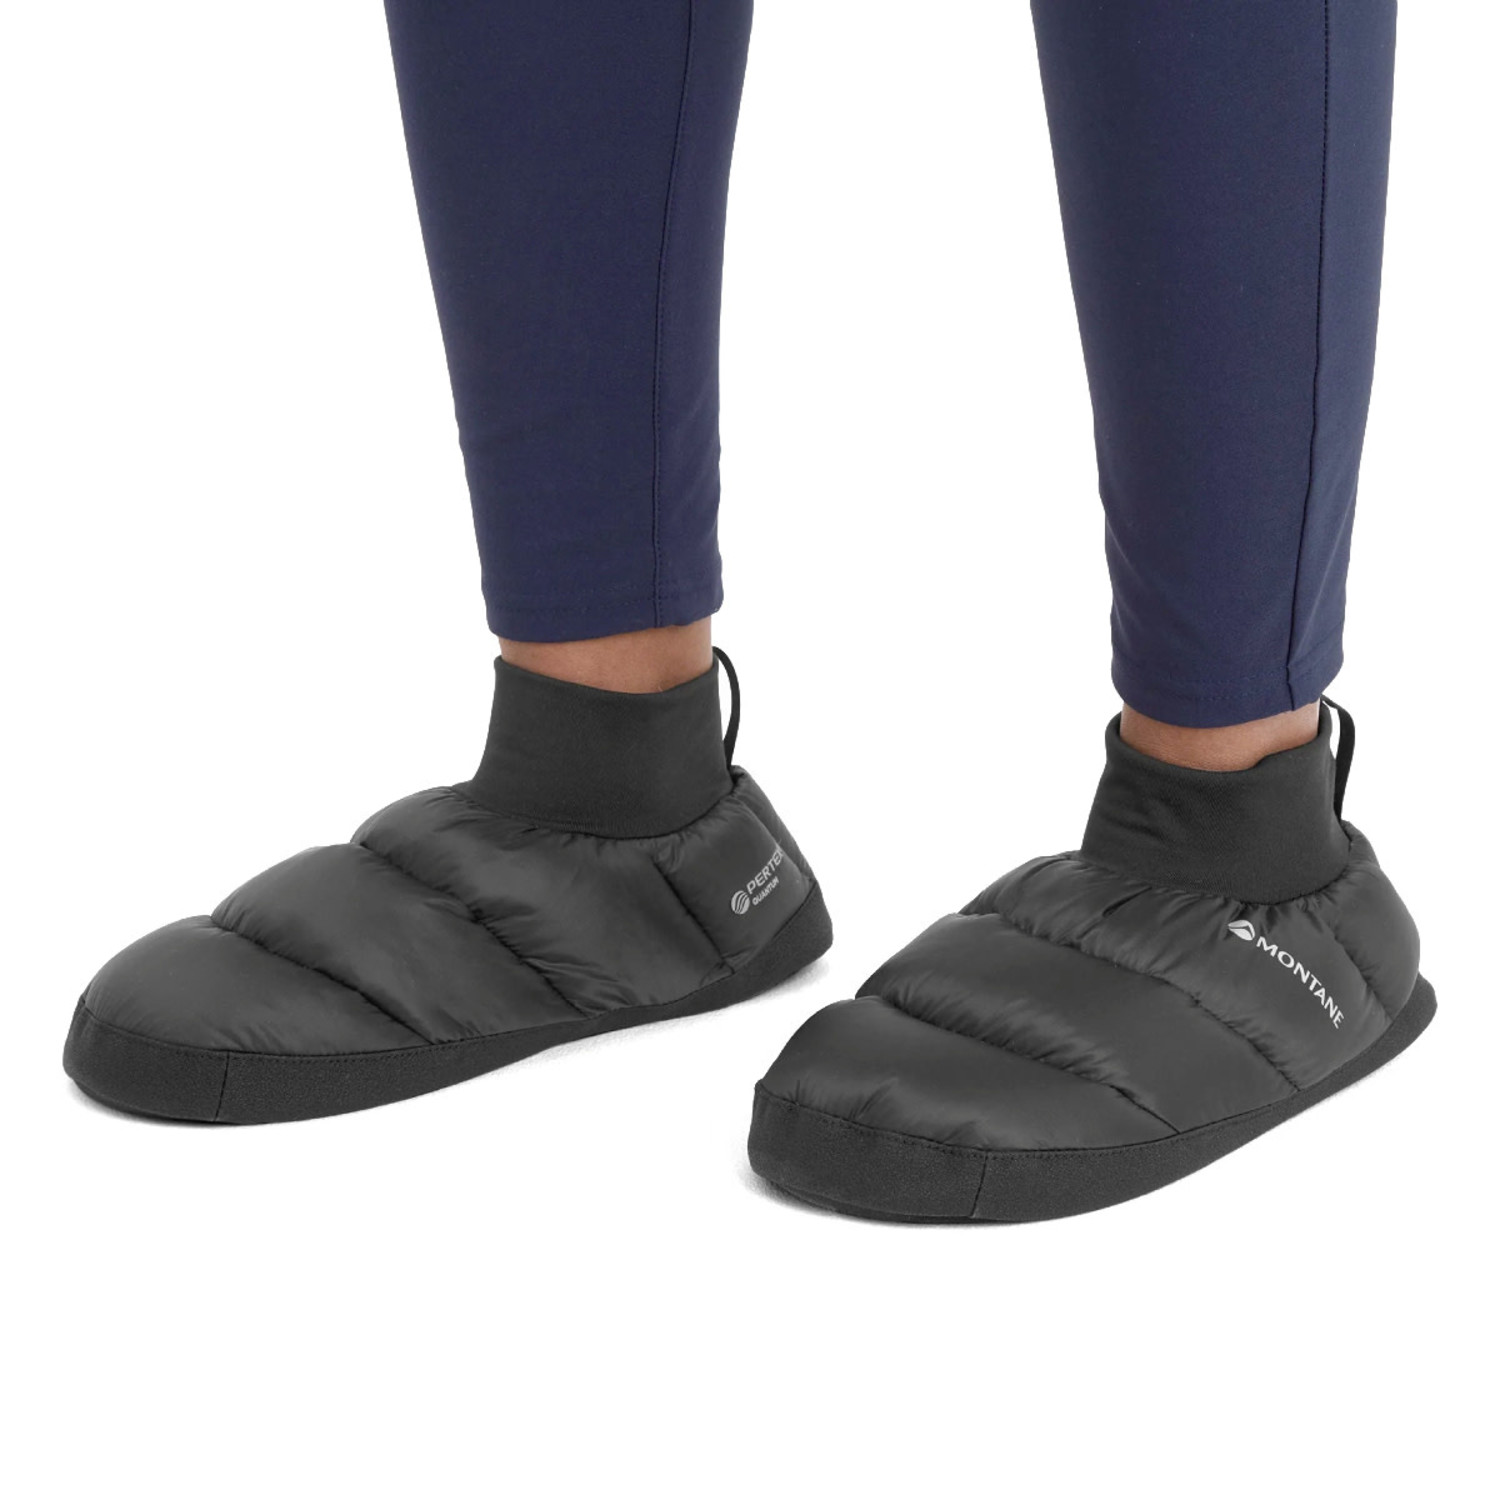 Yoga Socks for Women Non Slip 2 Pair, UK Size 3.5-5.5 Strap